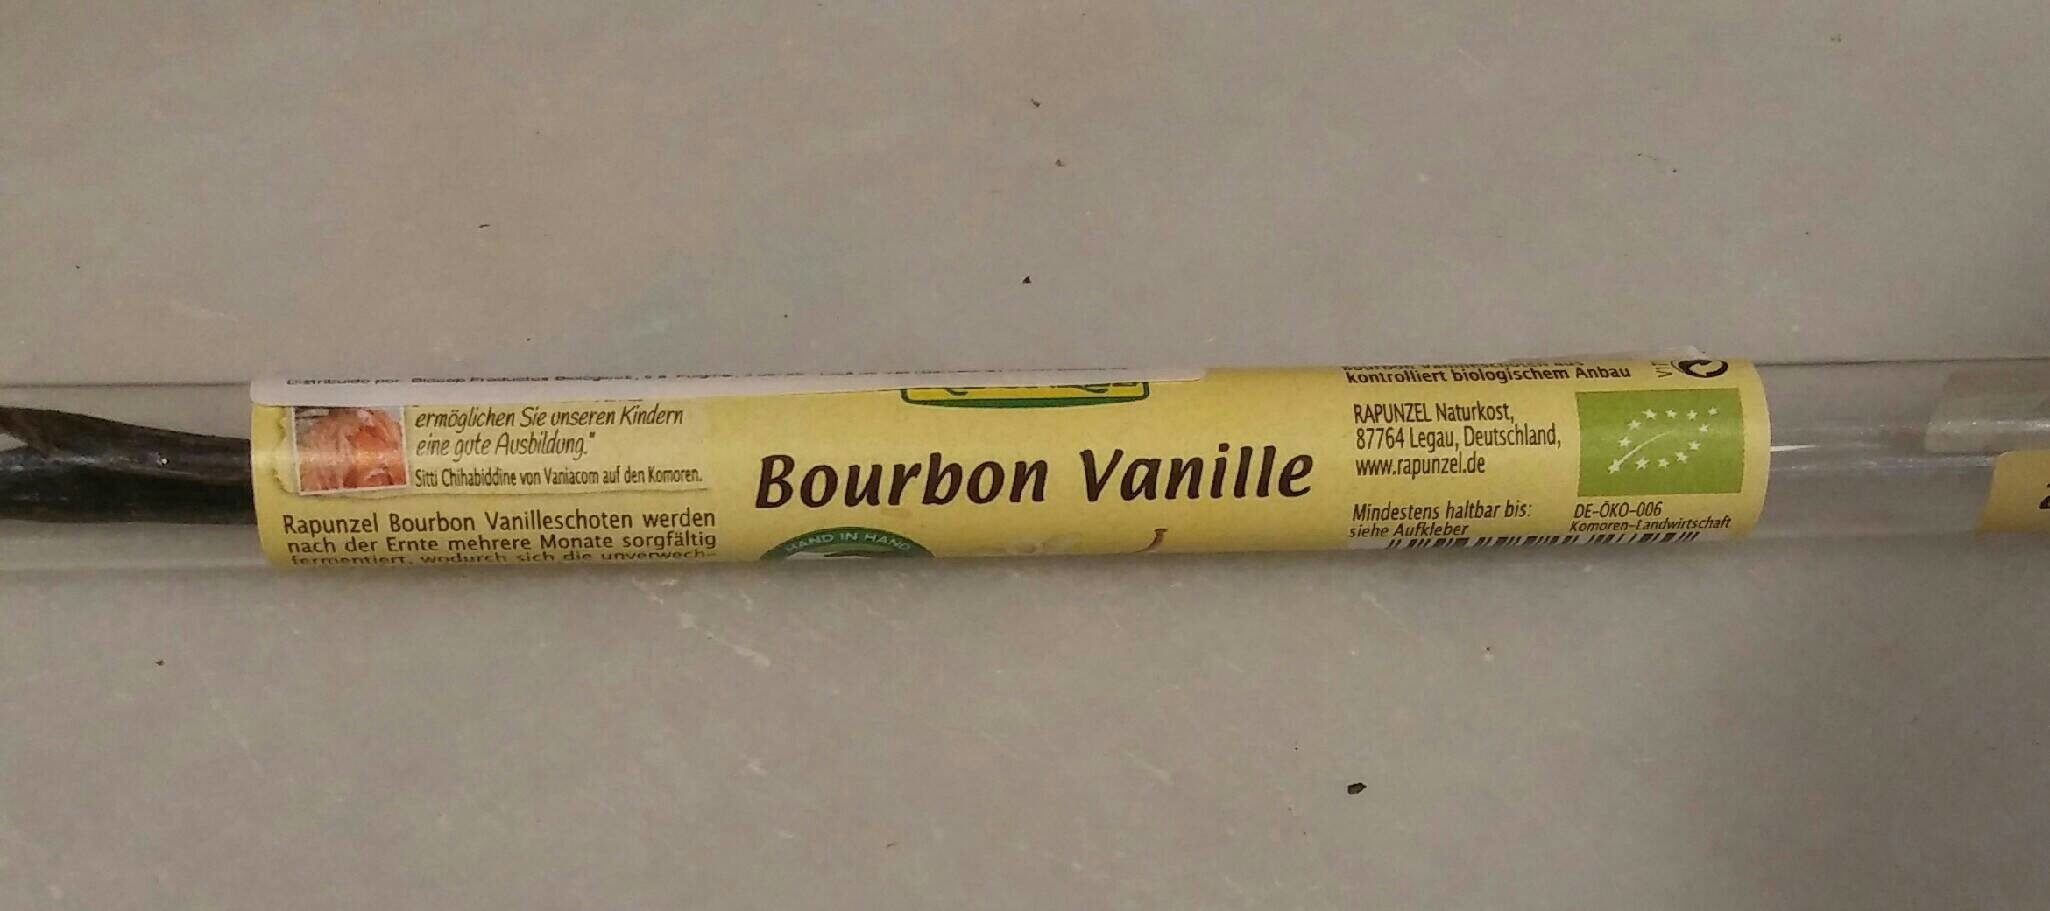 Bourbon Vanille Schoten - Produktua - es